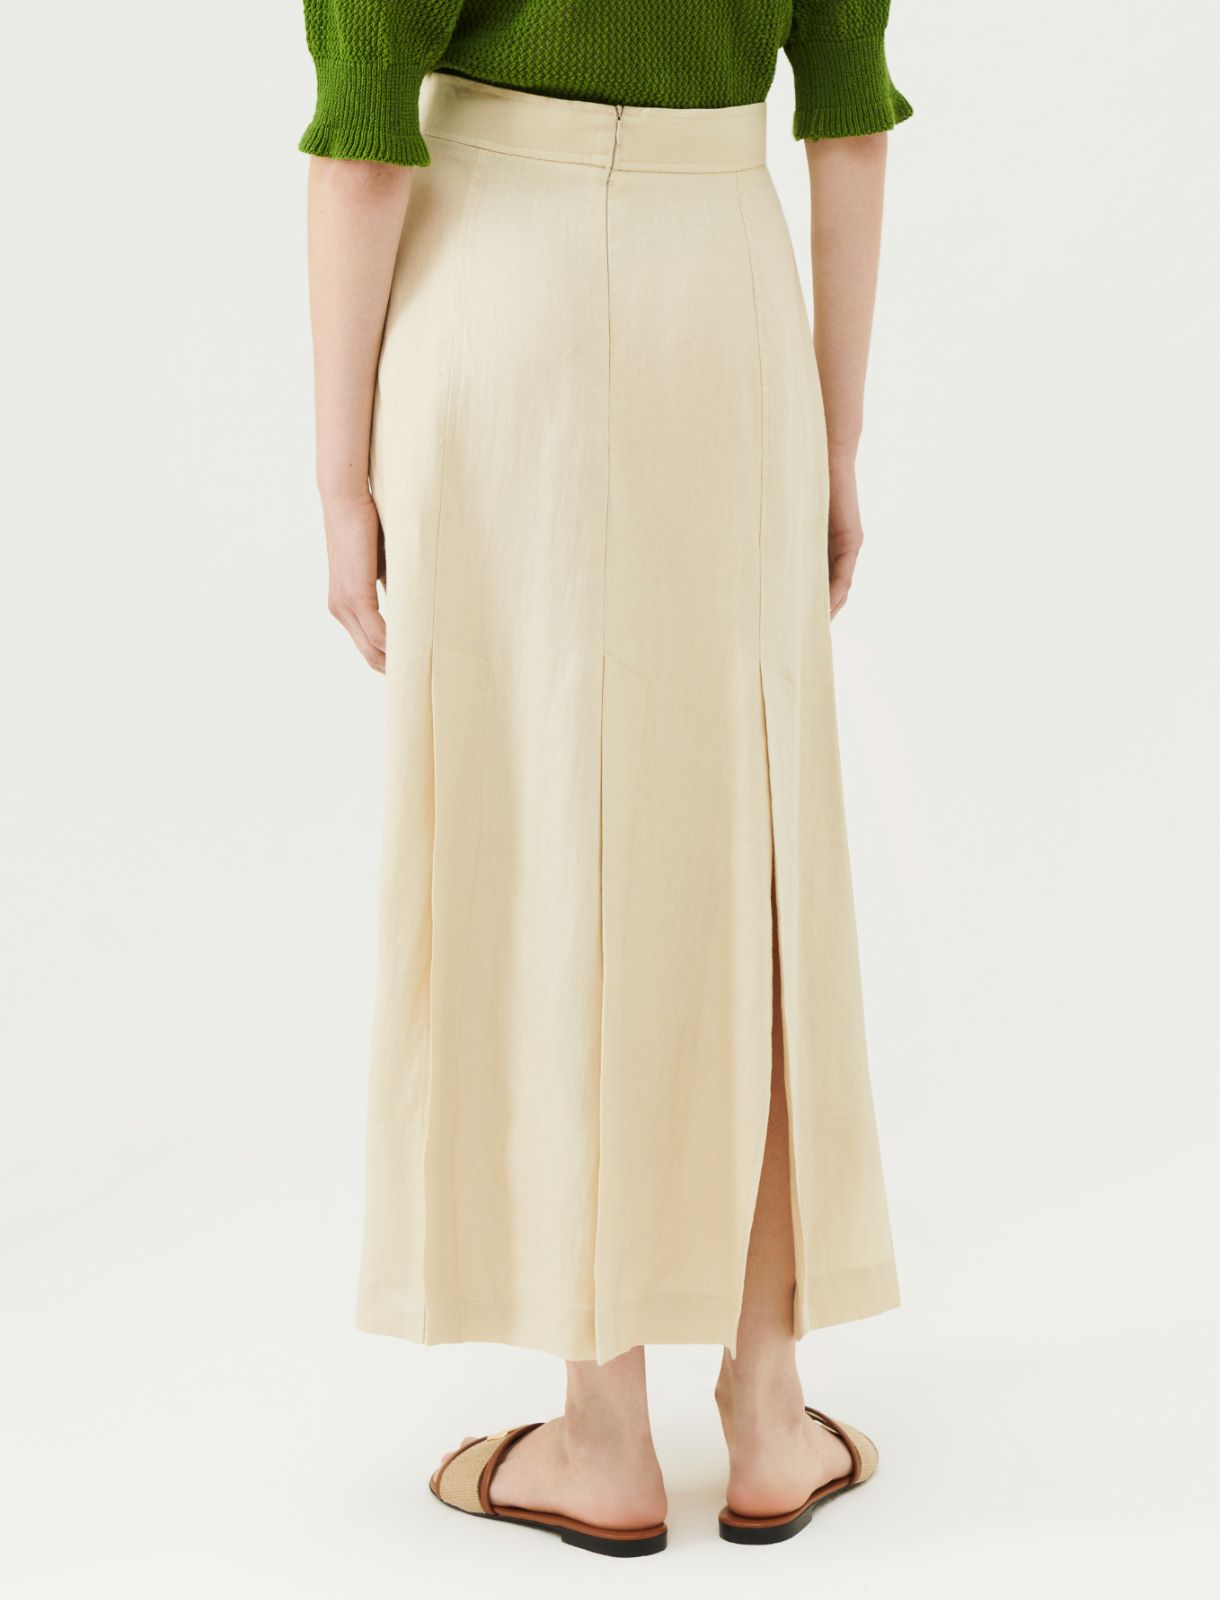 Linen skirt - Sand - Marella - 2